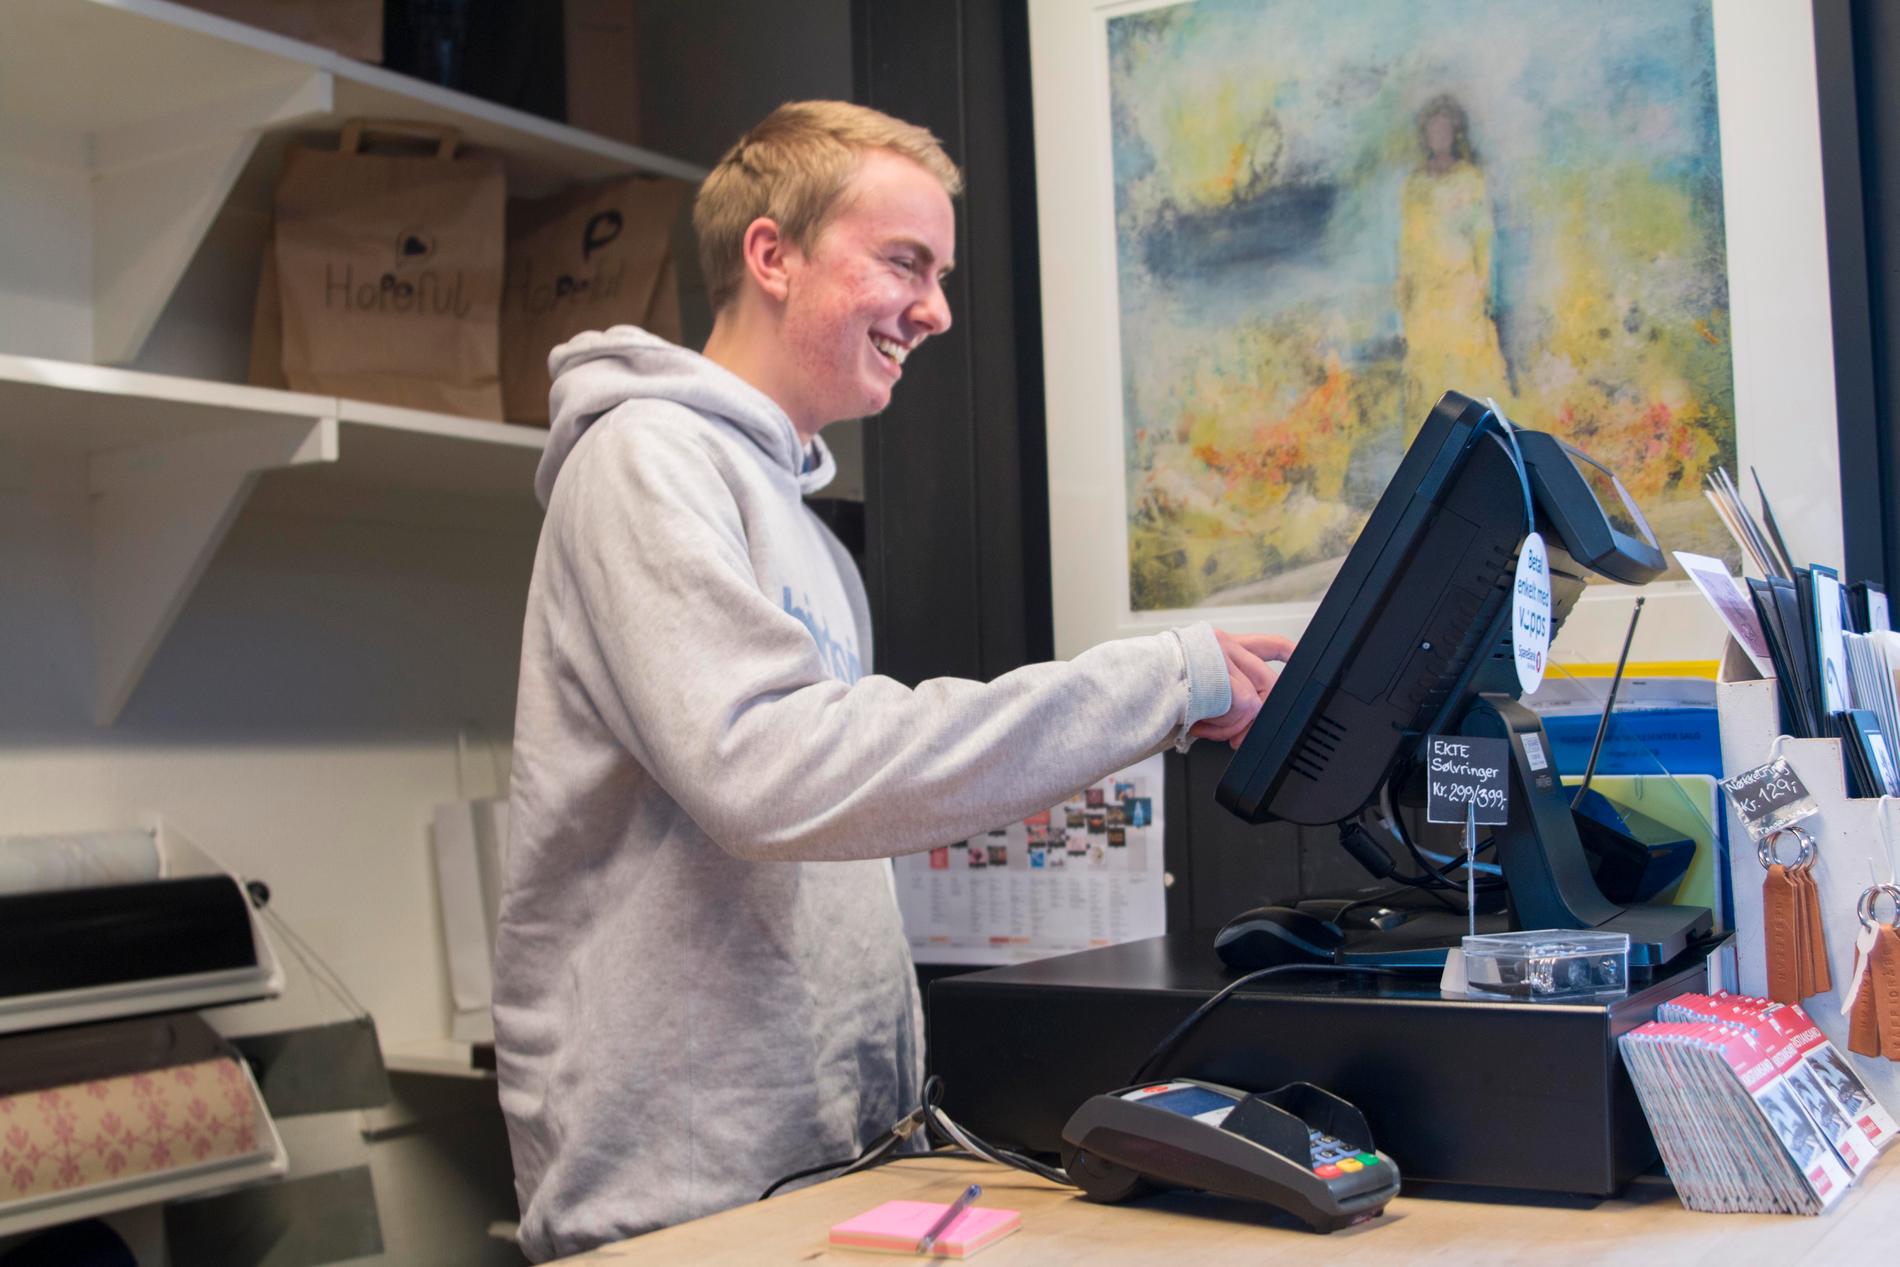 I desember ble Hopeful godkjent som lærebedrift. Gabriel Gabrielsen Steinnes (20) går salg- og service, og er nå lærling i butikken for å ta fagbrev.